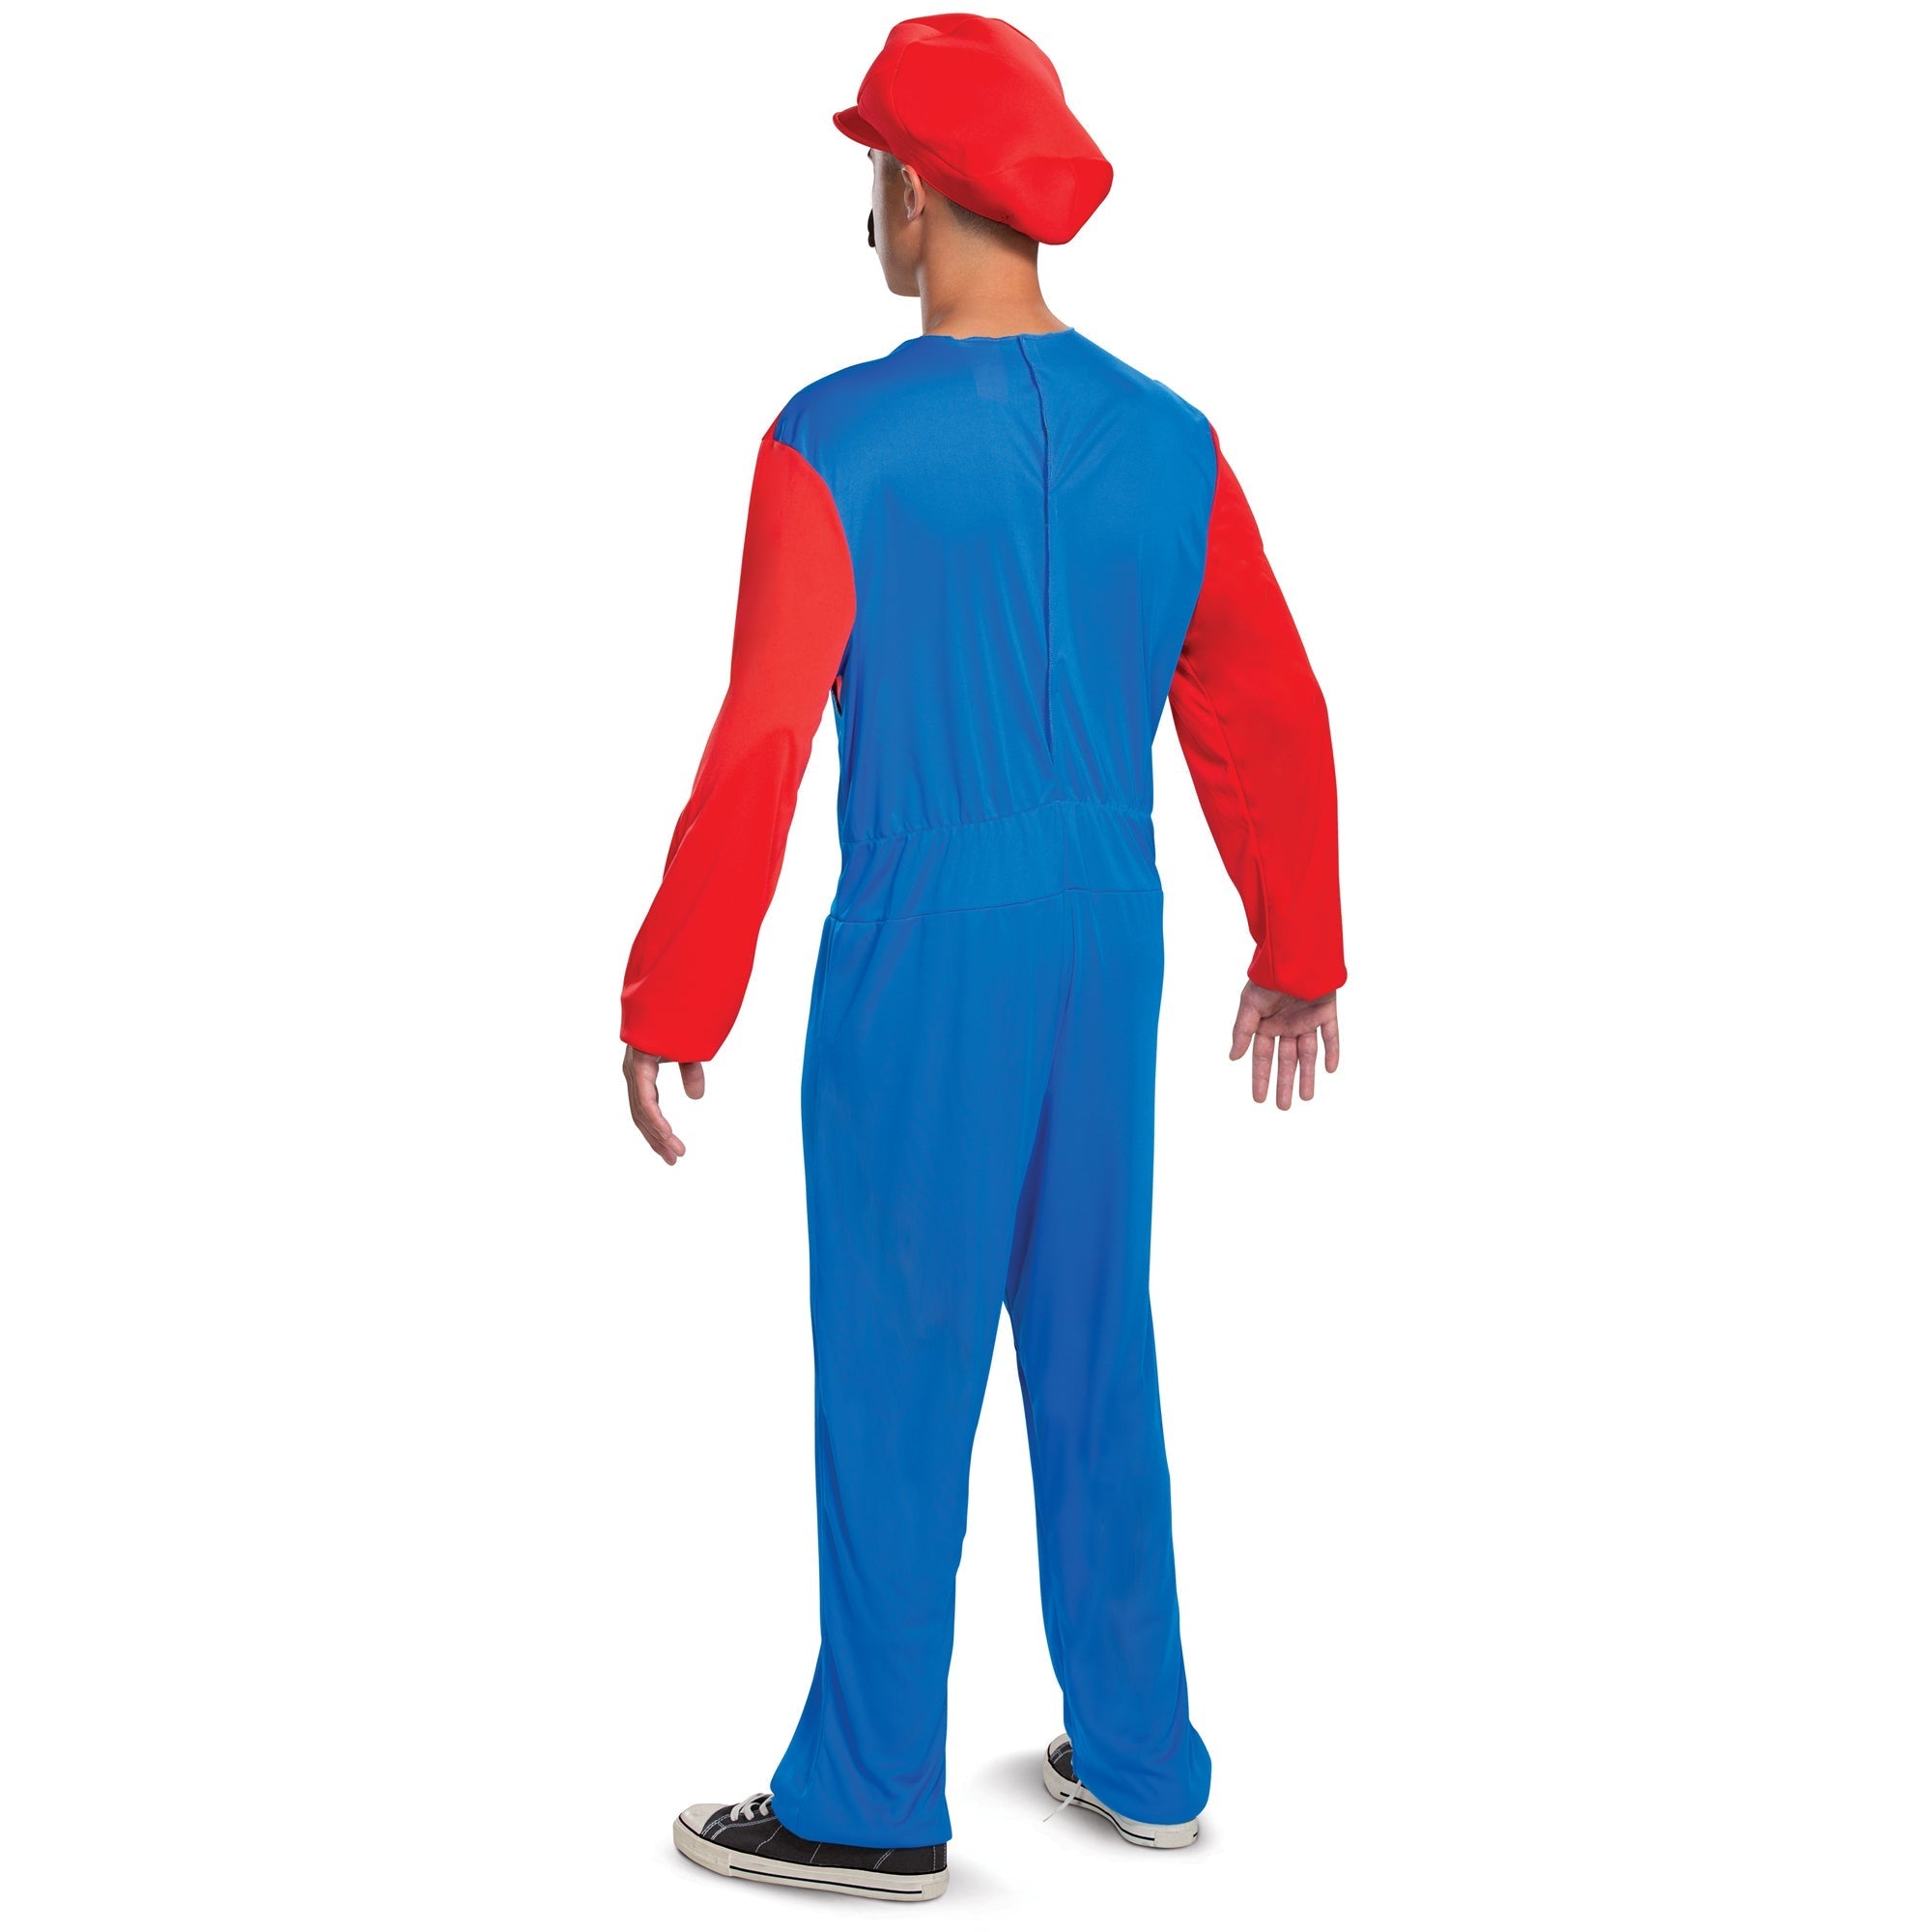 Costume de Mario pour adultes, Super Mario Bros.